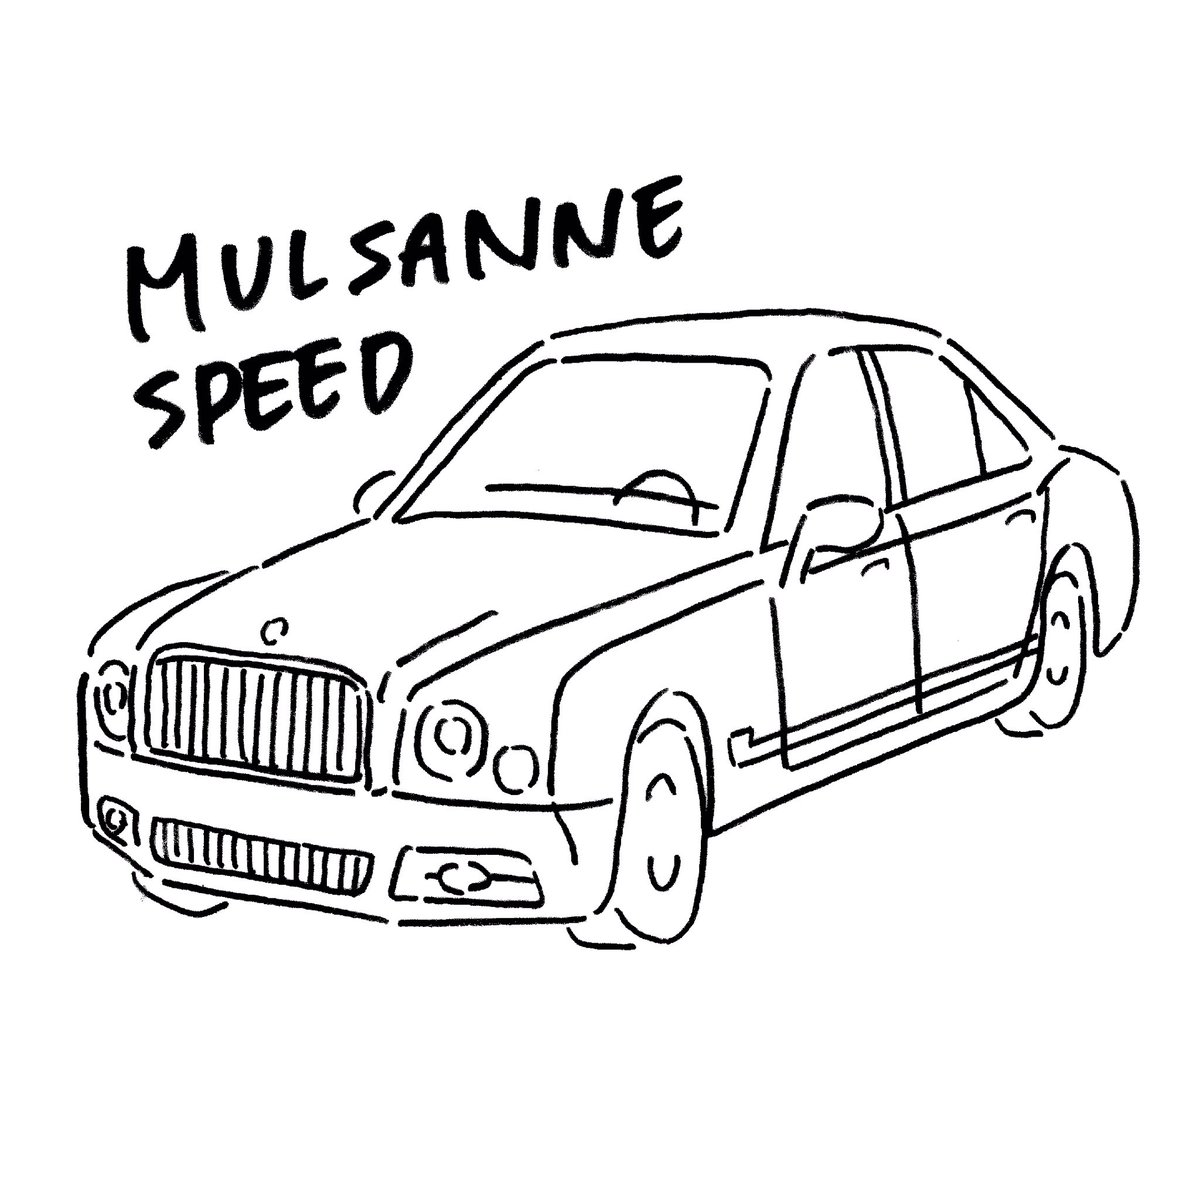 みけねこチカ かりの 高級車を描いたんだ 見てくれ ついでに Rtで私を有名にしてください Mulsanne Mulsannespeed Car くるま 車 かわいい かわいい車 Illust イラスト 手描きイラスト 絵描きさんとつながりたい 絵師さんと繋がりたい